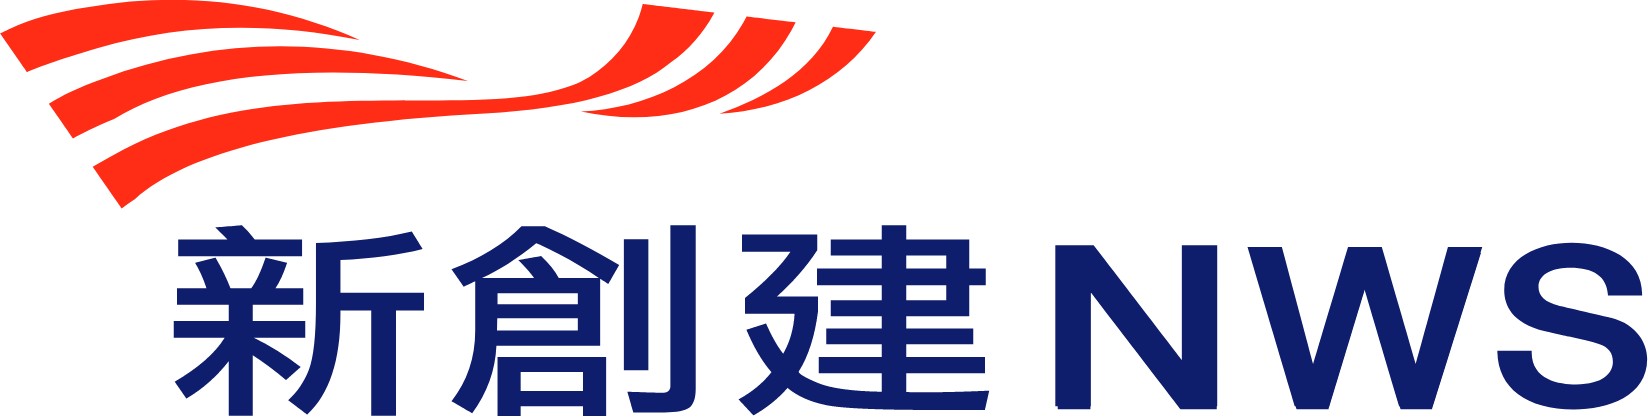 nws logo transparent